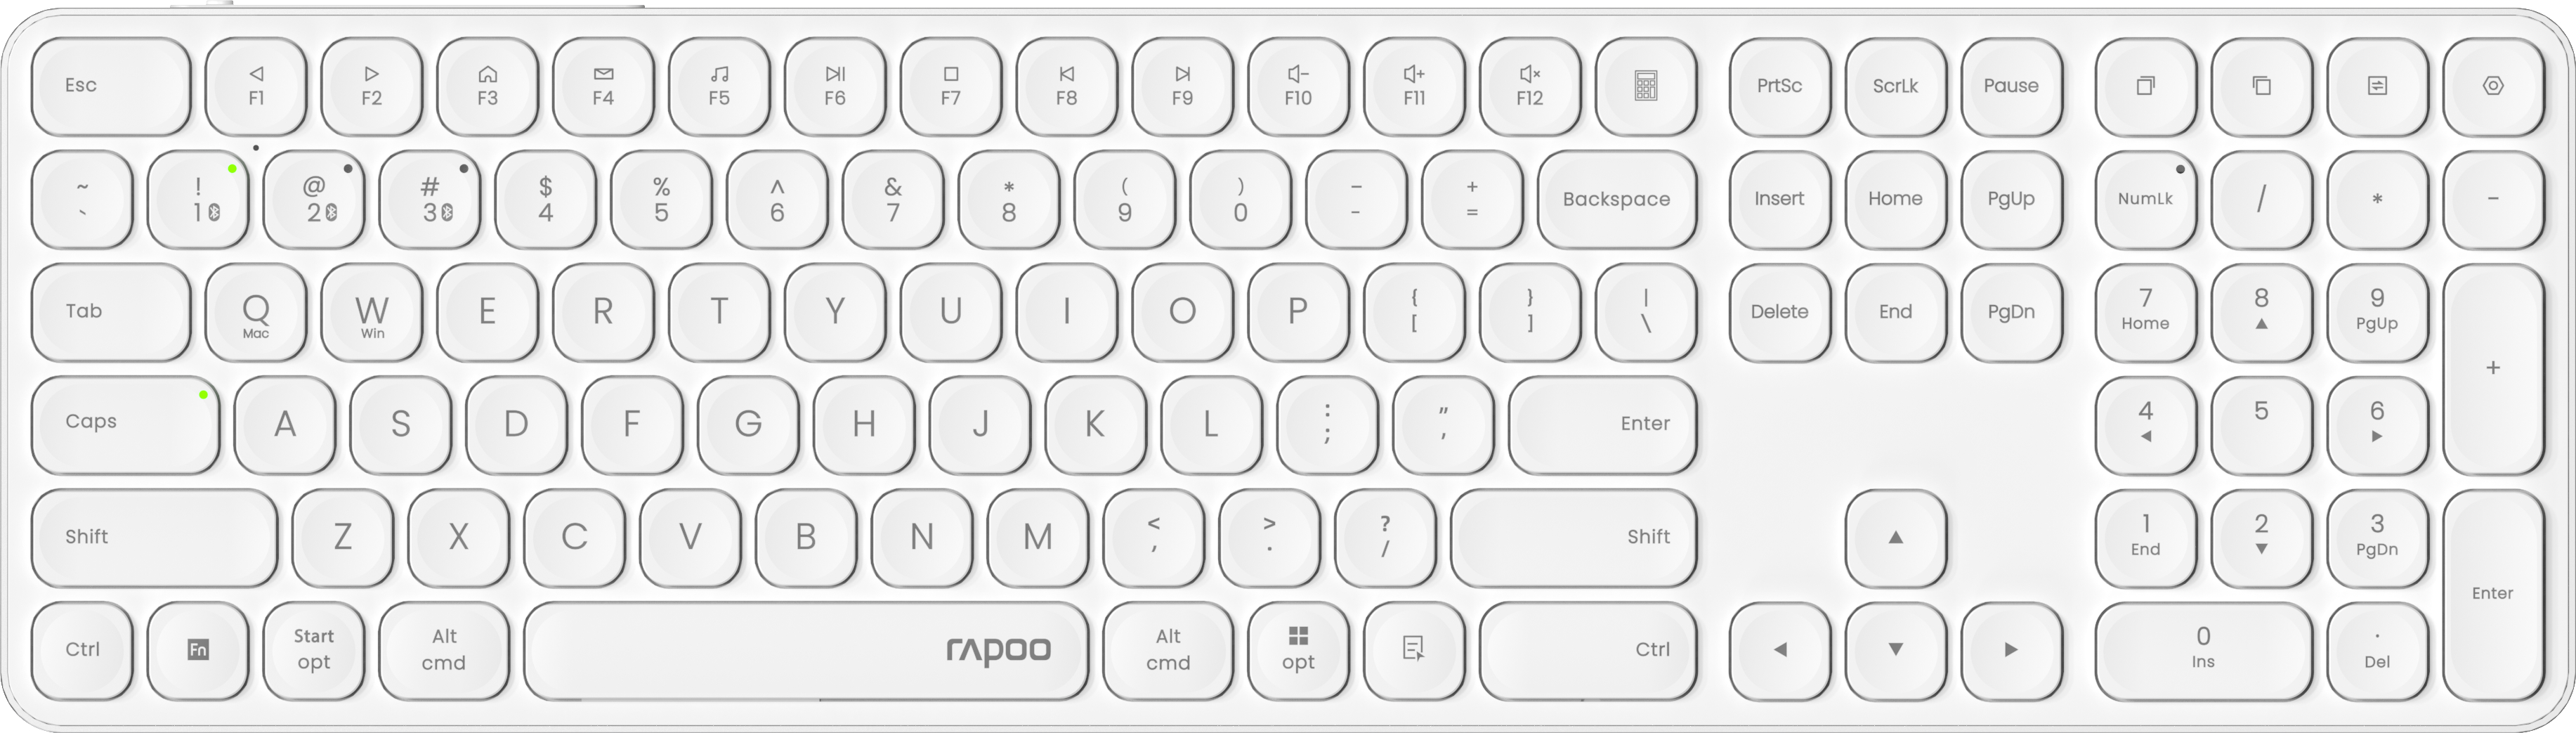 RAPOO E9810 ultraslim Keyboard 12645 Wireless, White